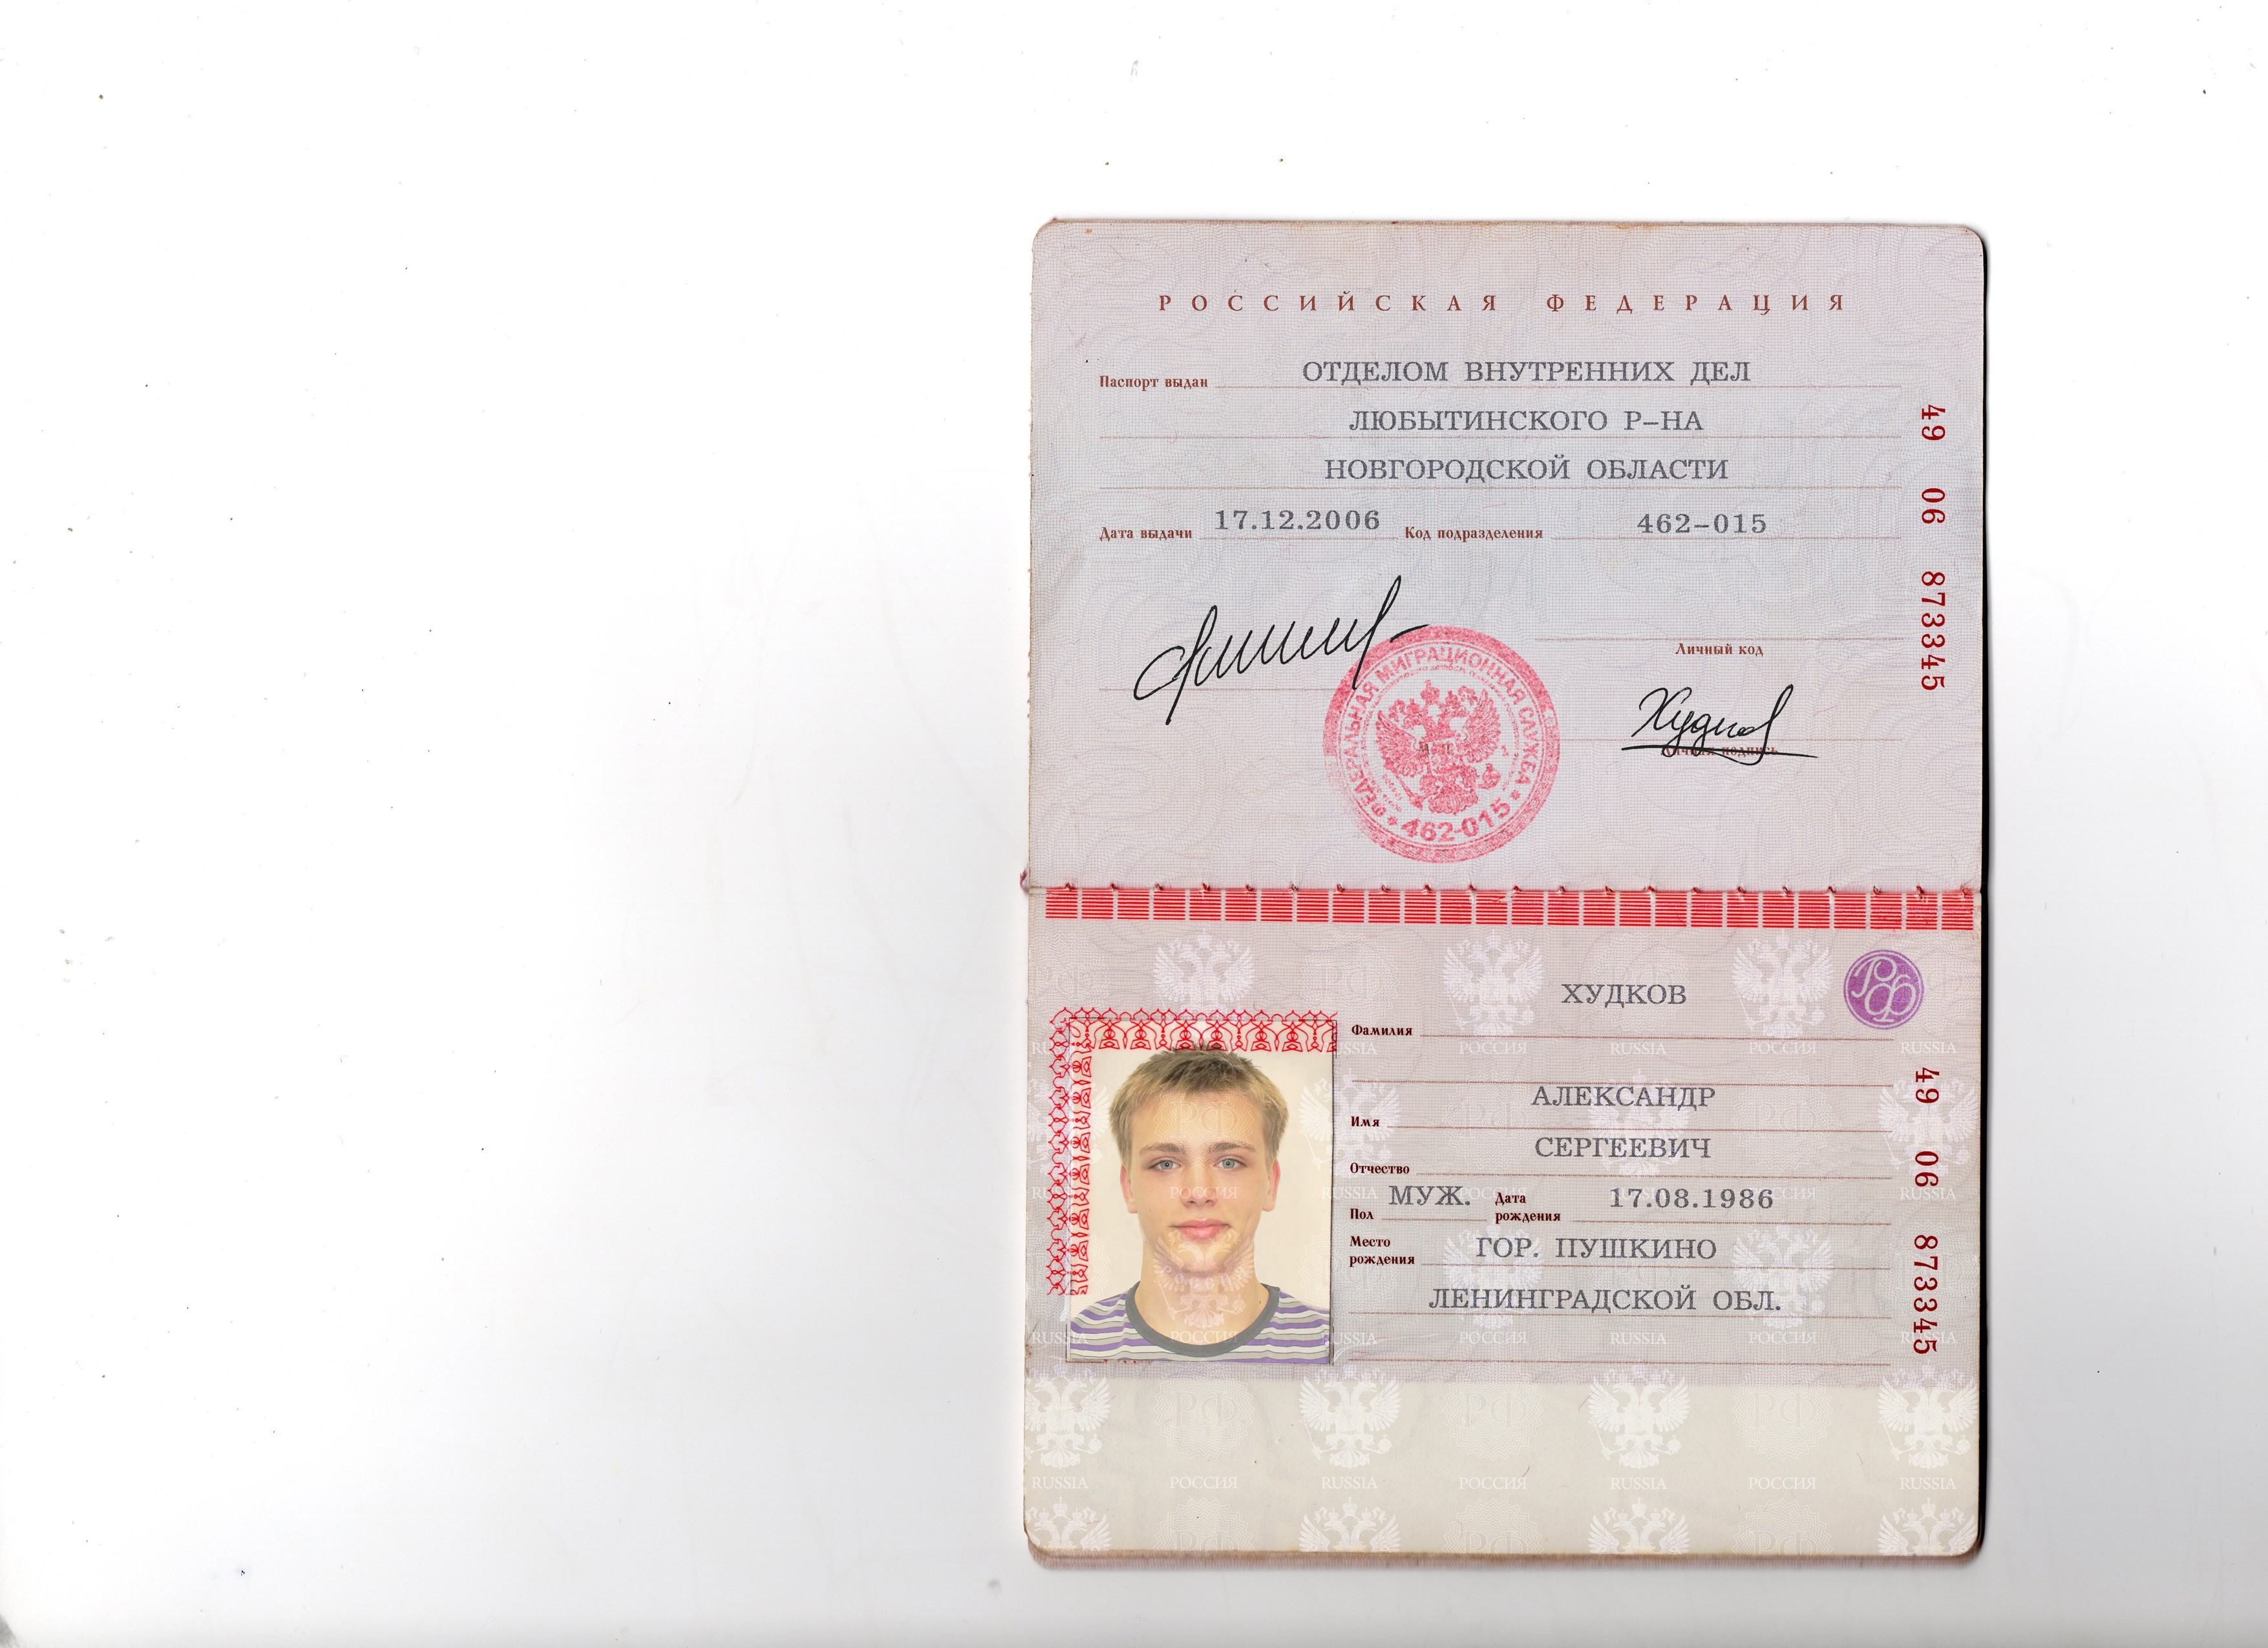 Код подразделения города москвы. Паспортные данные.